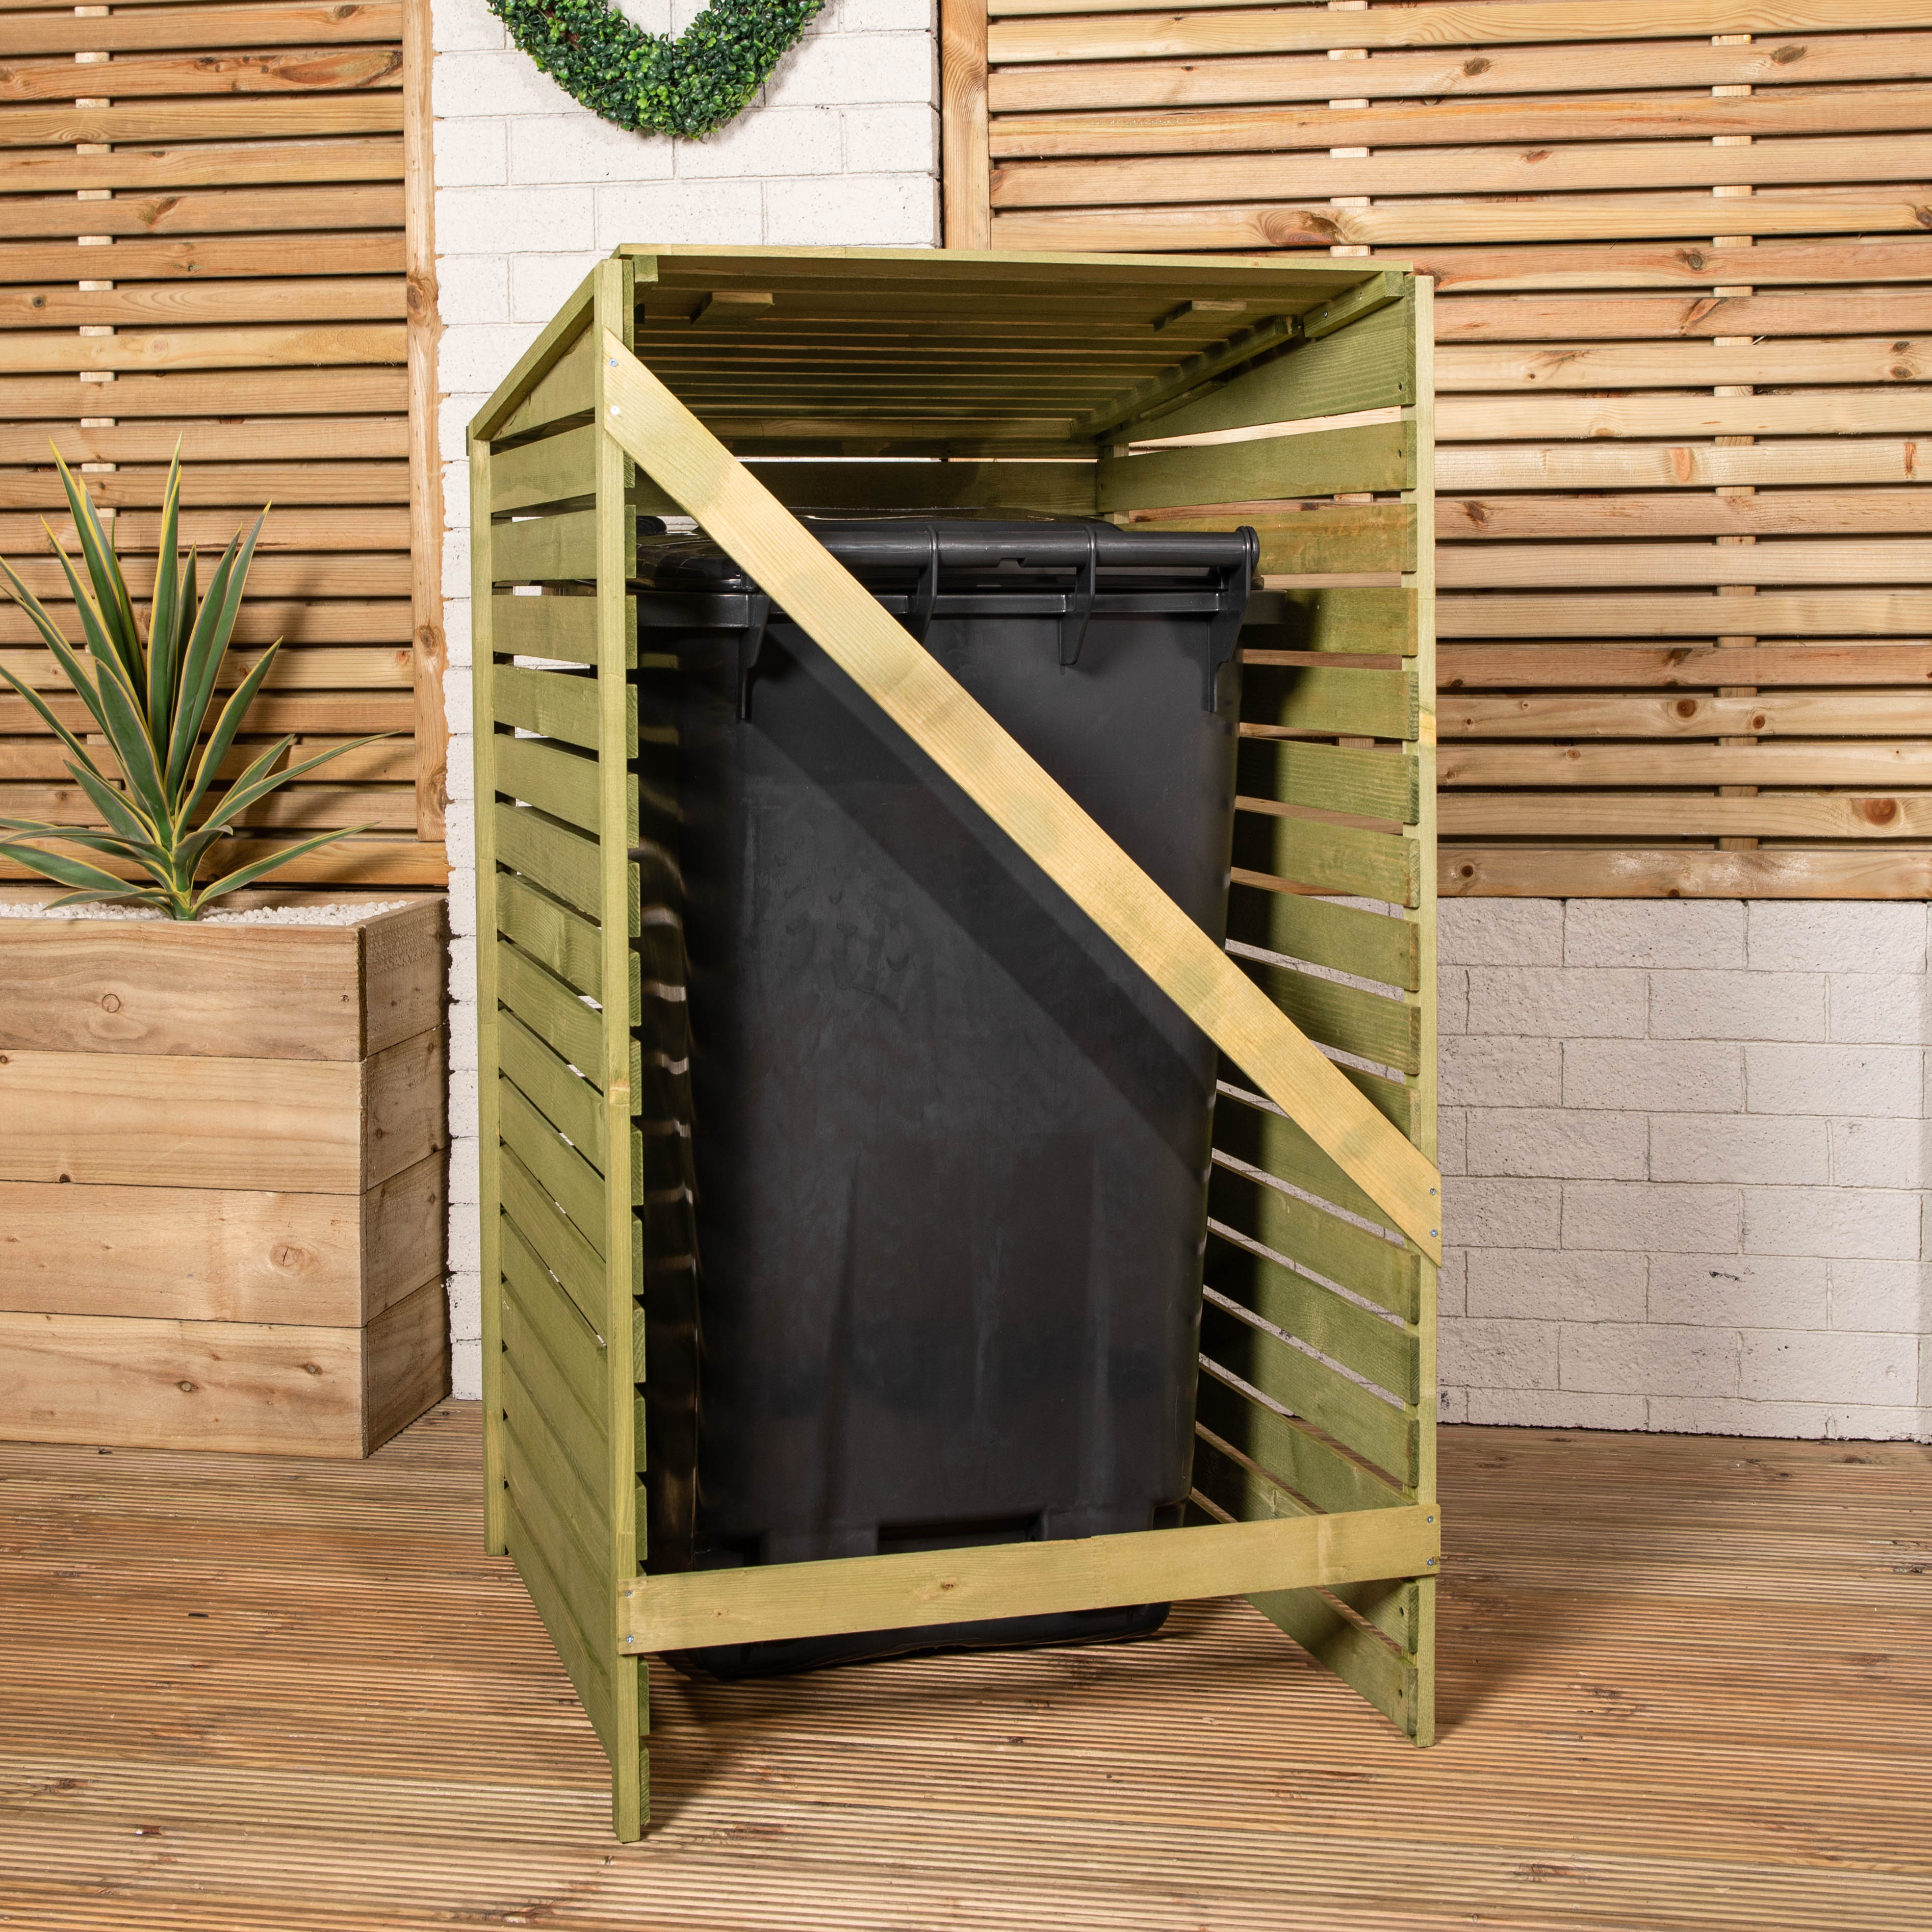 68cm x 1.2m Wooden Outdoor Garden Single Wheelie Bin Store Storage